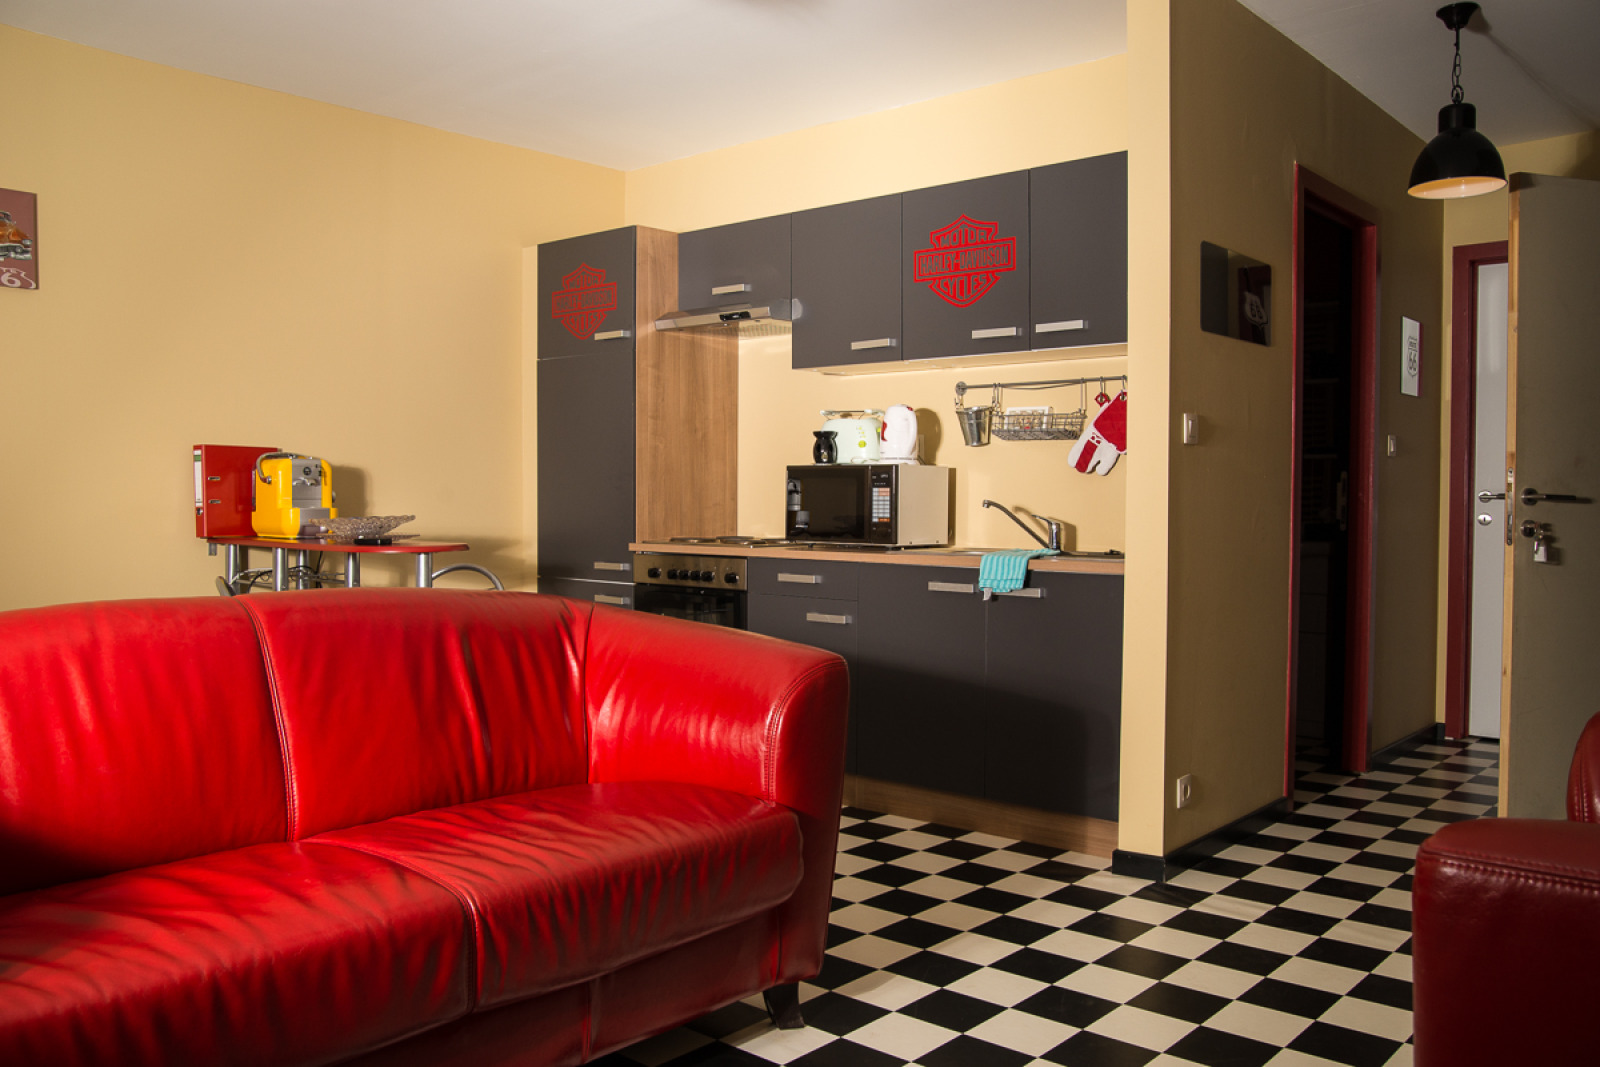 Cuisine et coin cosy des chambres d'hôte sRoad 66 - Sixties Western City à Chaudfontaine